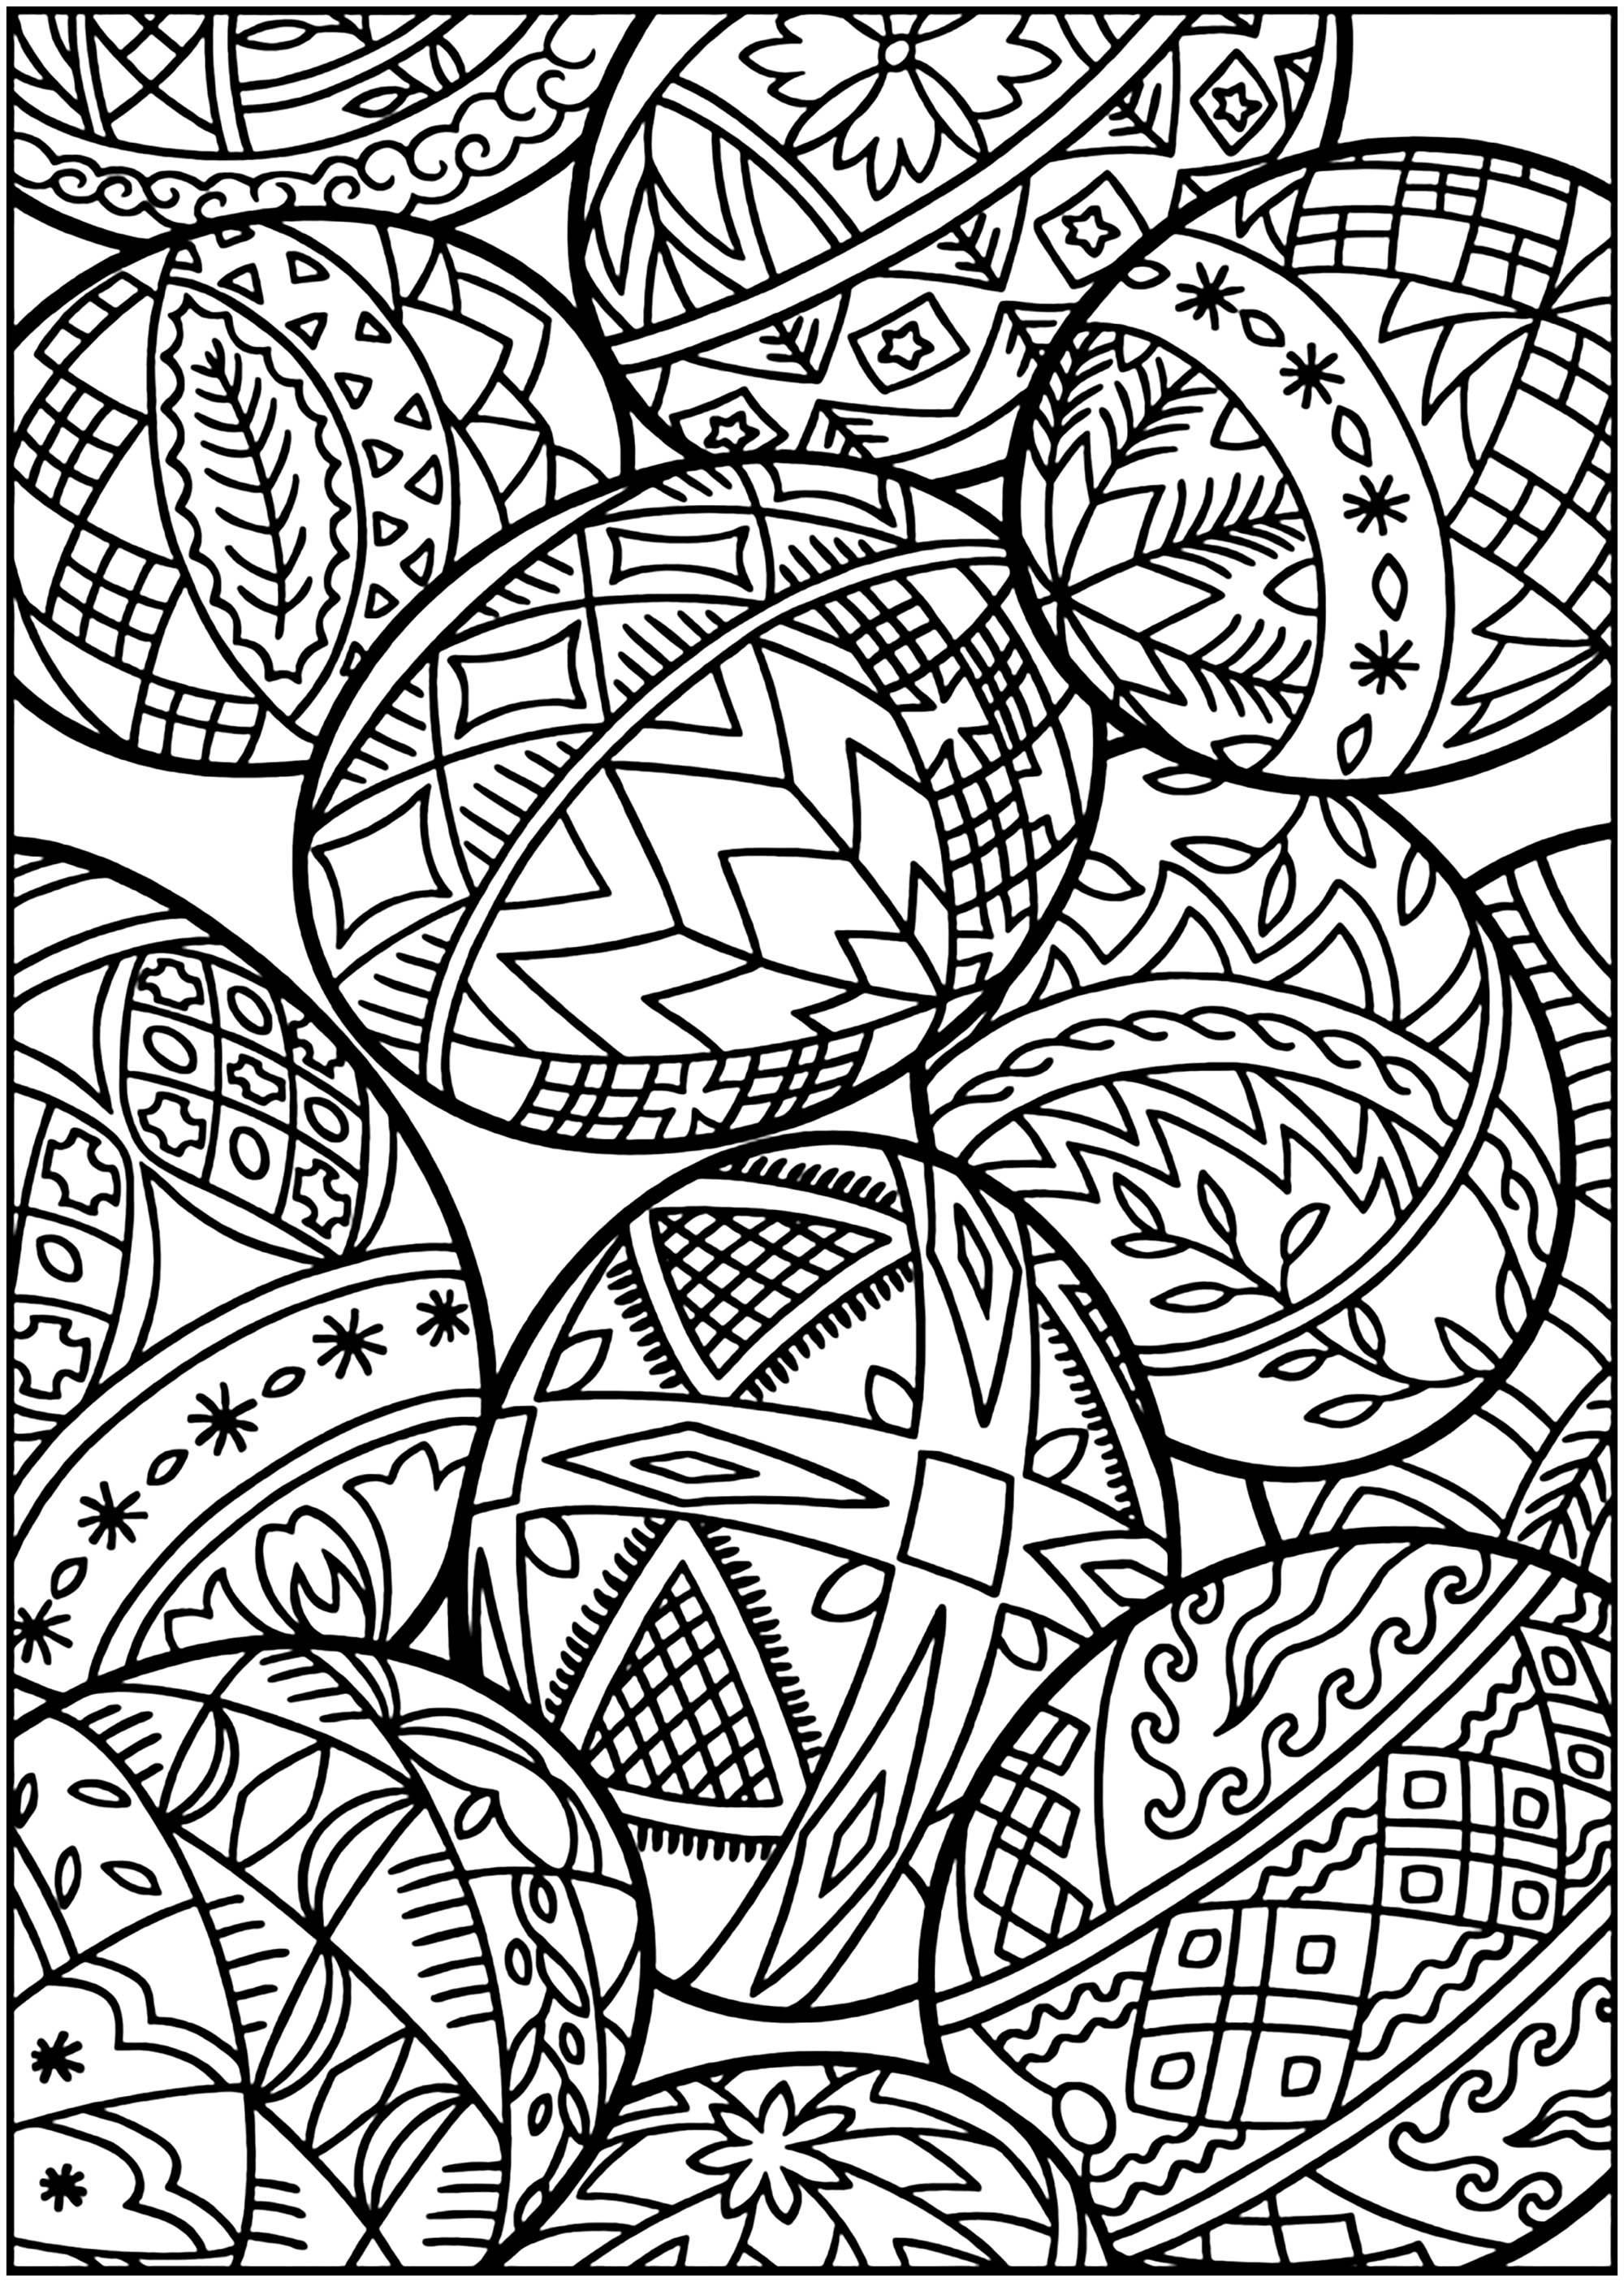 Oeufs de Pâques avec nombreux motifs, Artiste : Dover Publications   Source : doverpublications